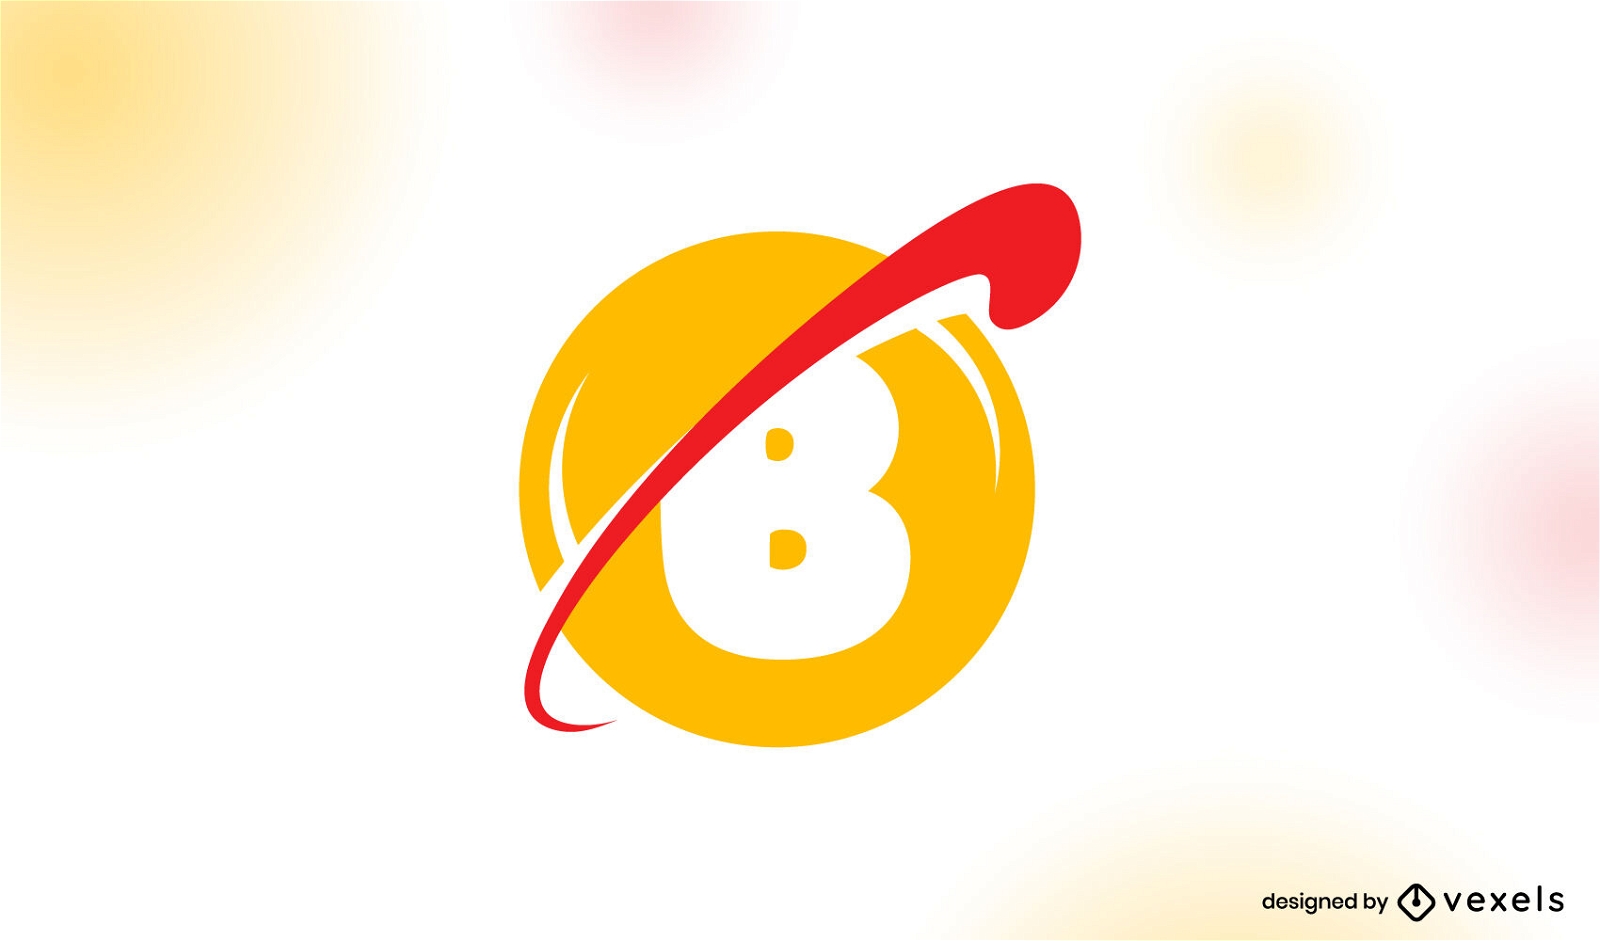 Buchstabe B im gelben Logo-Business-Design